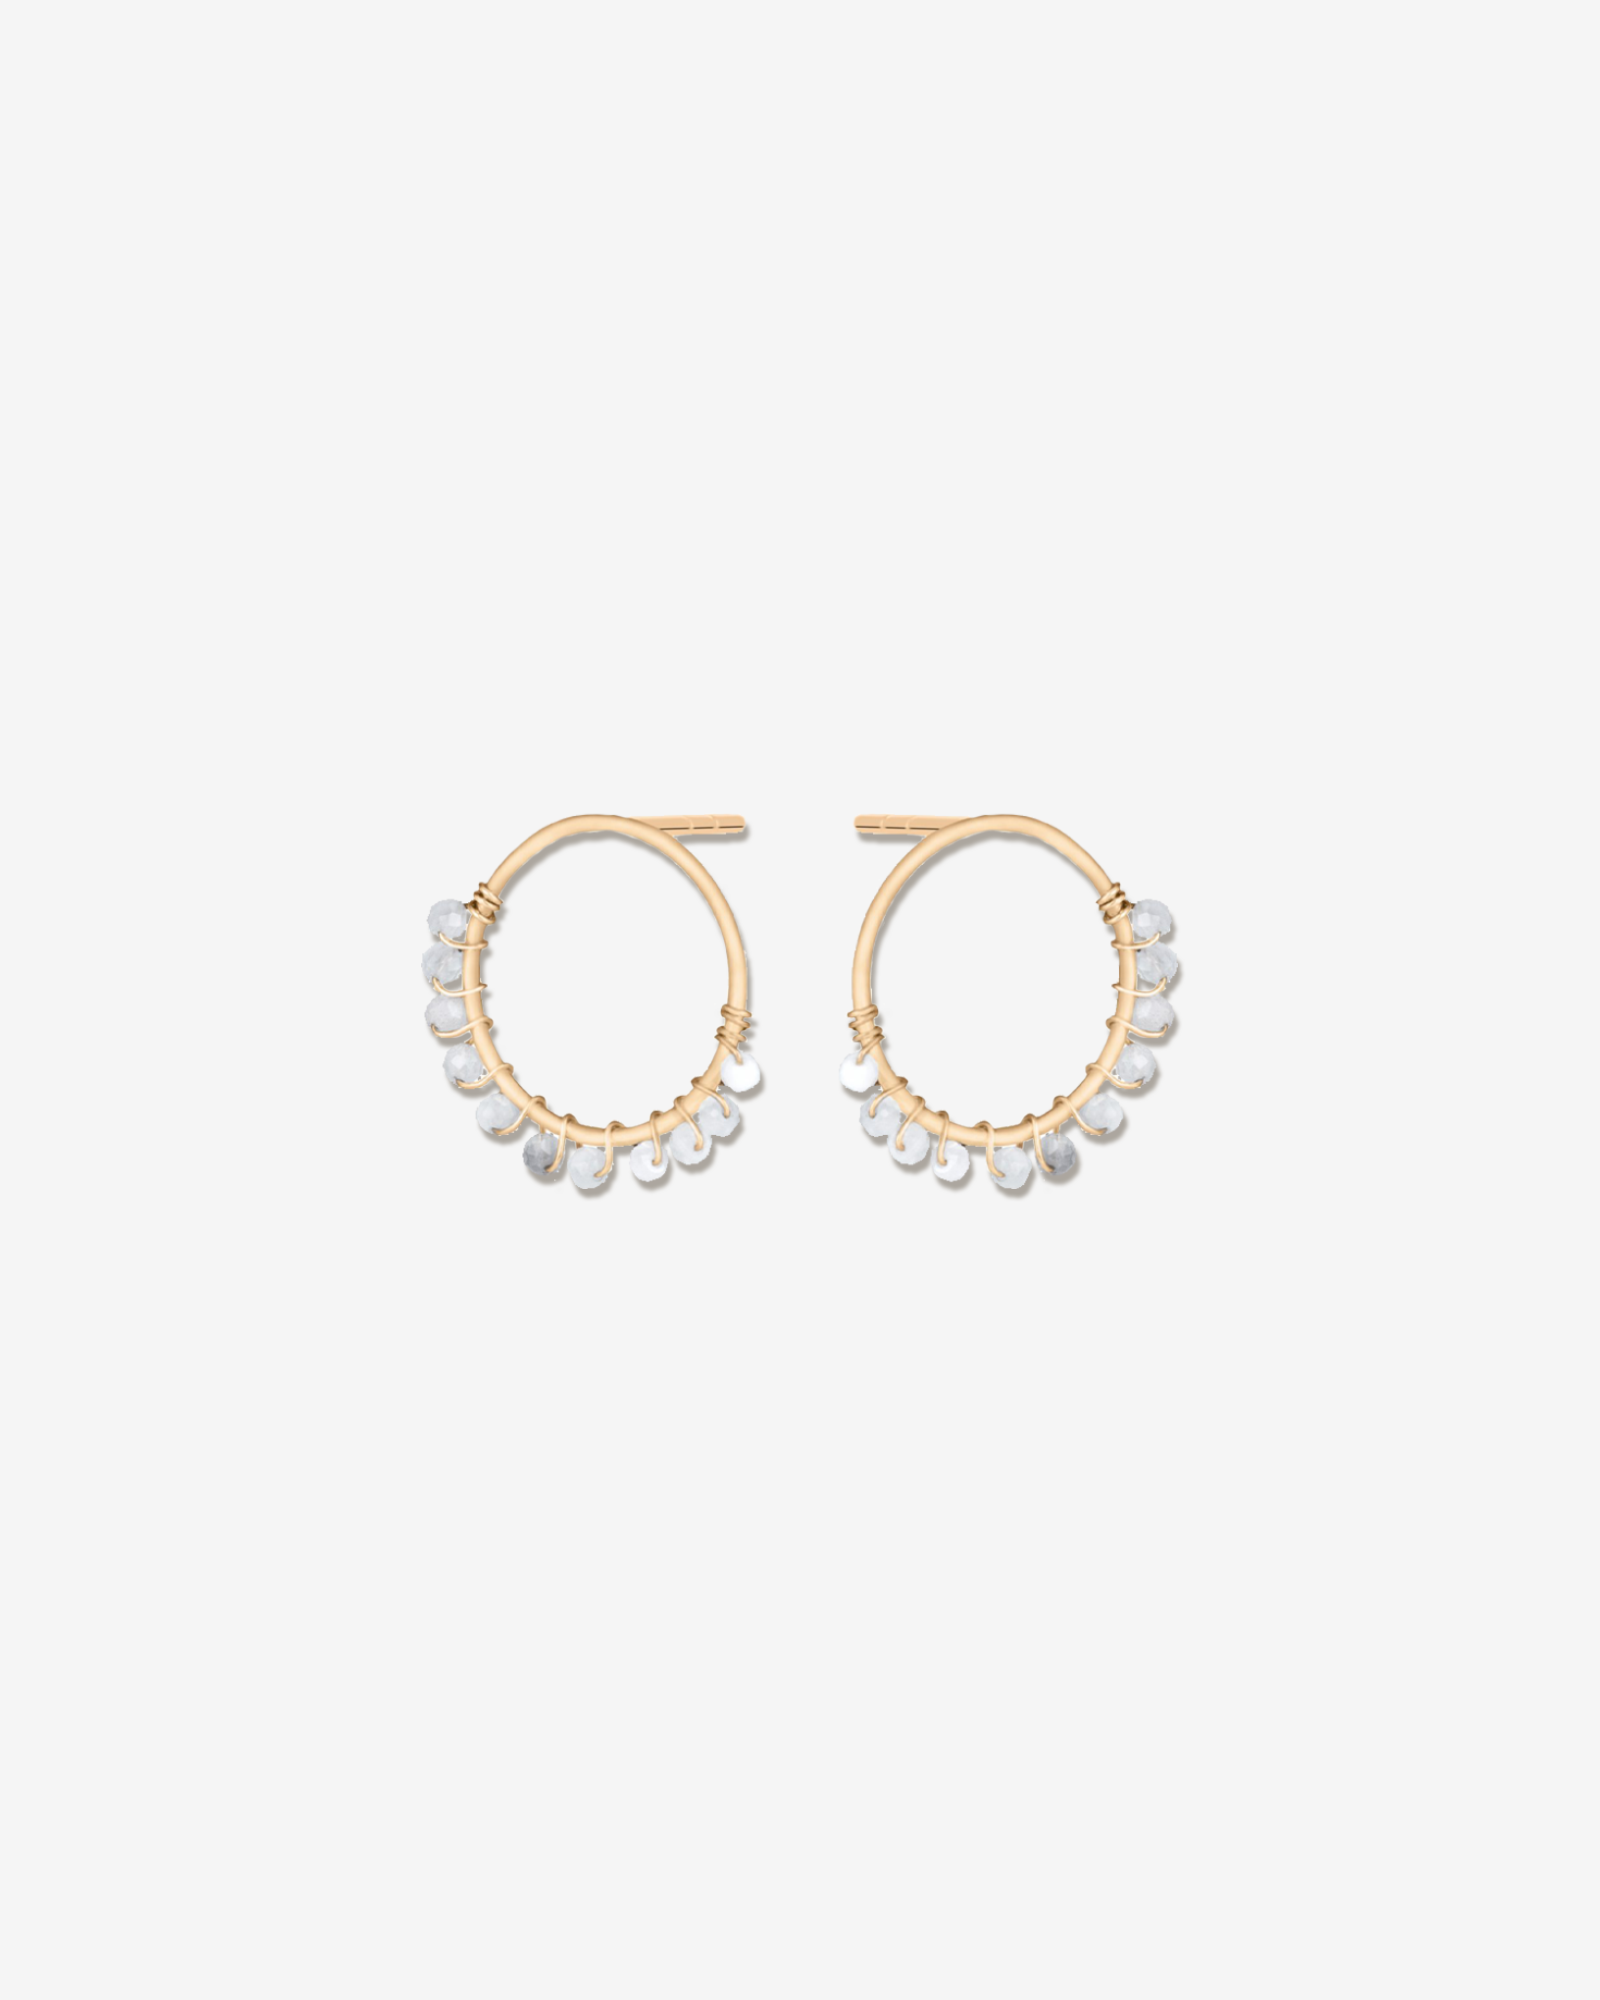 Marielle – earrings